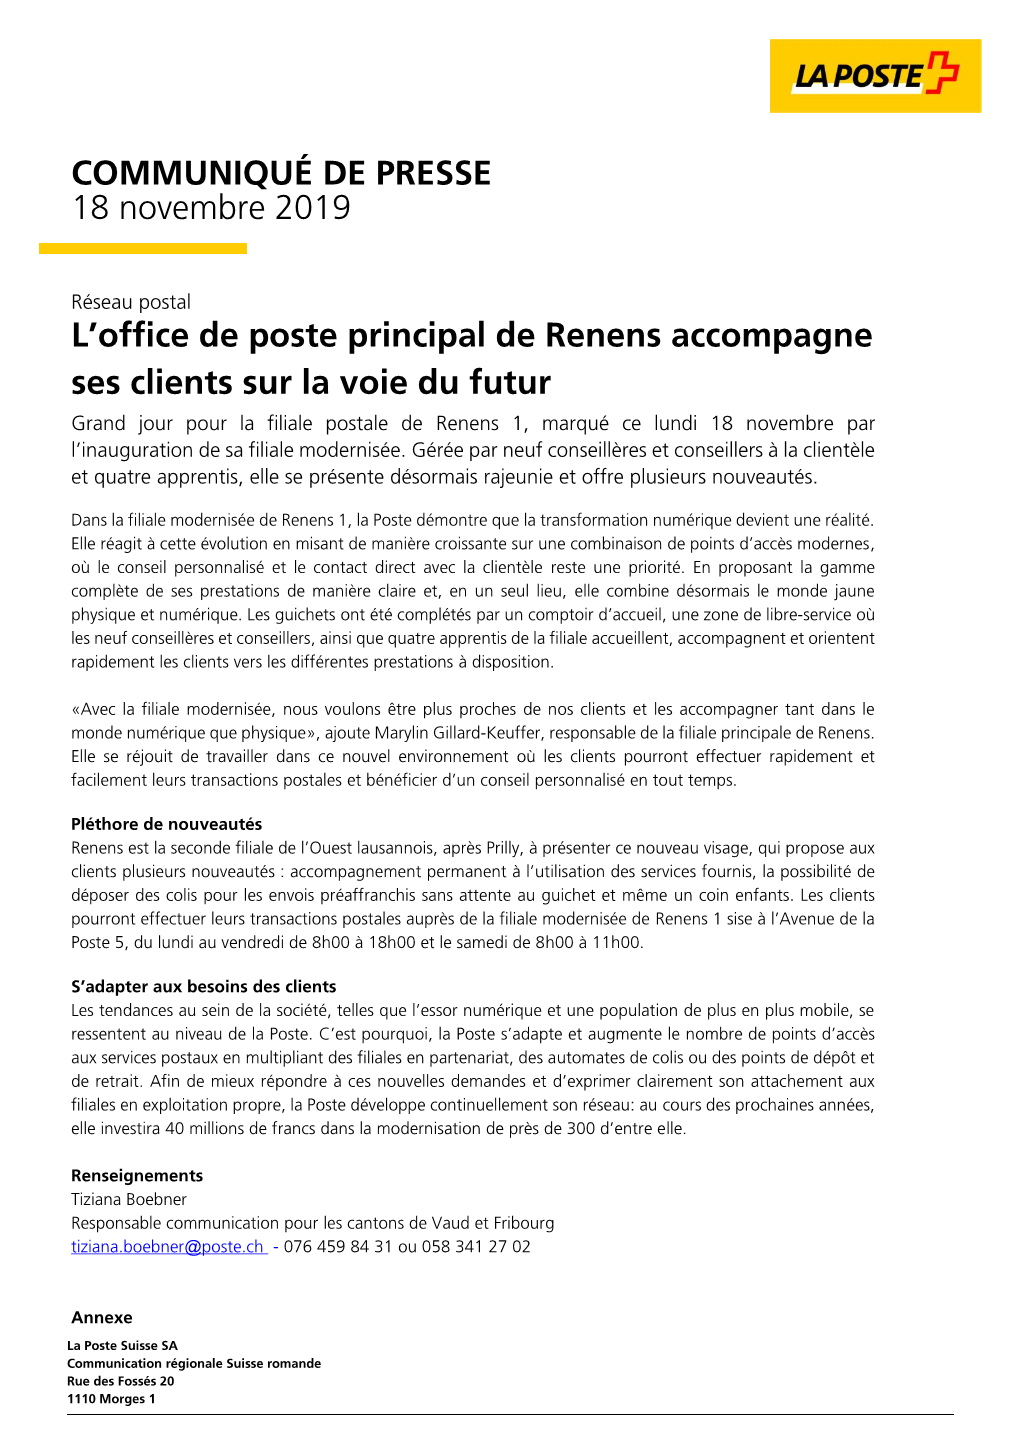 L'office De Poste Principal De Renens Accompagne Ses Clients Sur La Voie